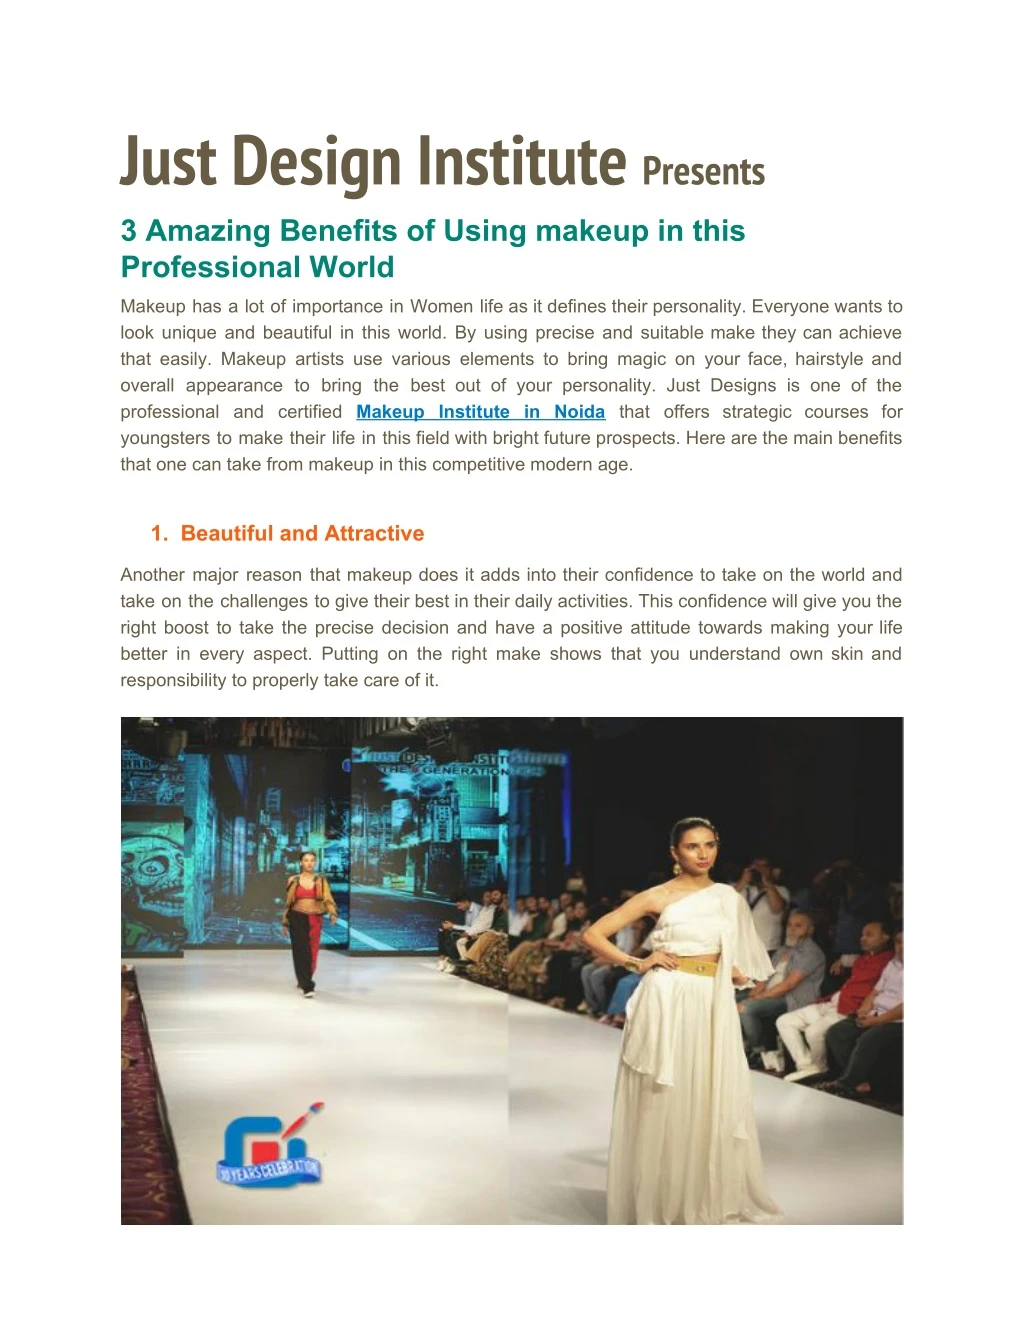 just design institute presents 3 amazing benefits